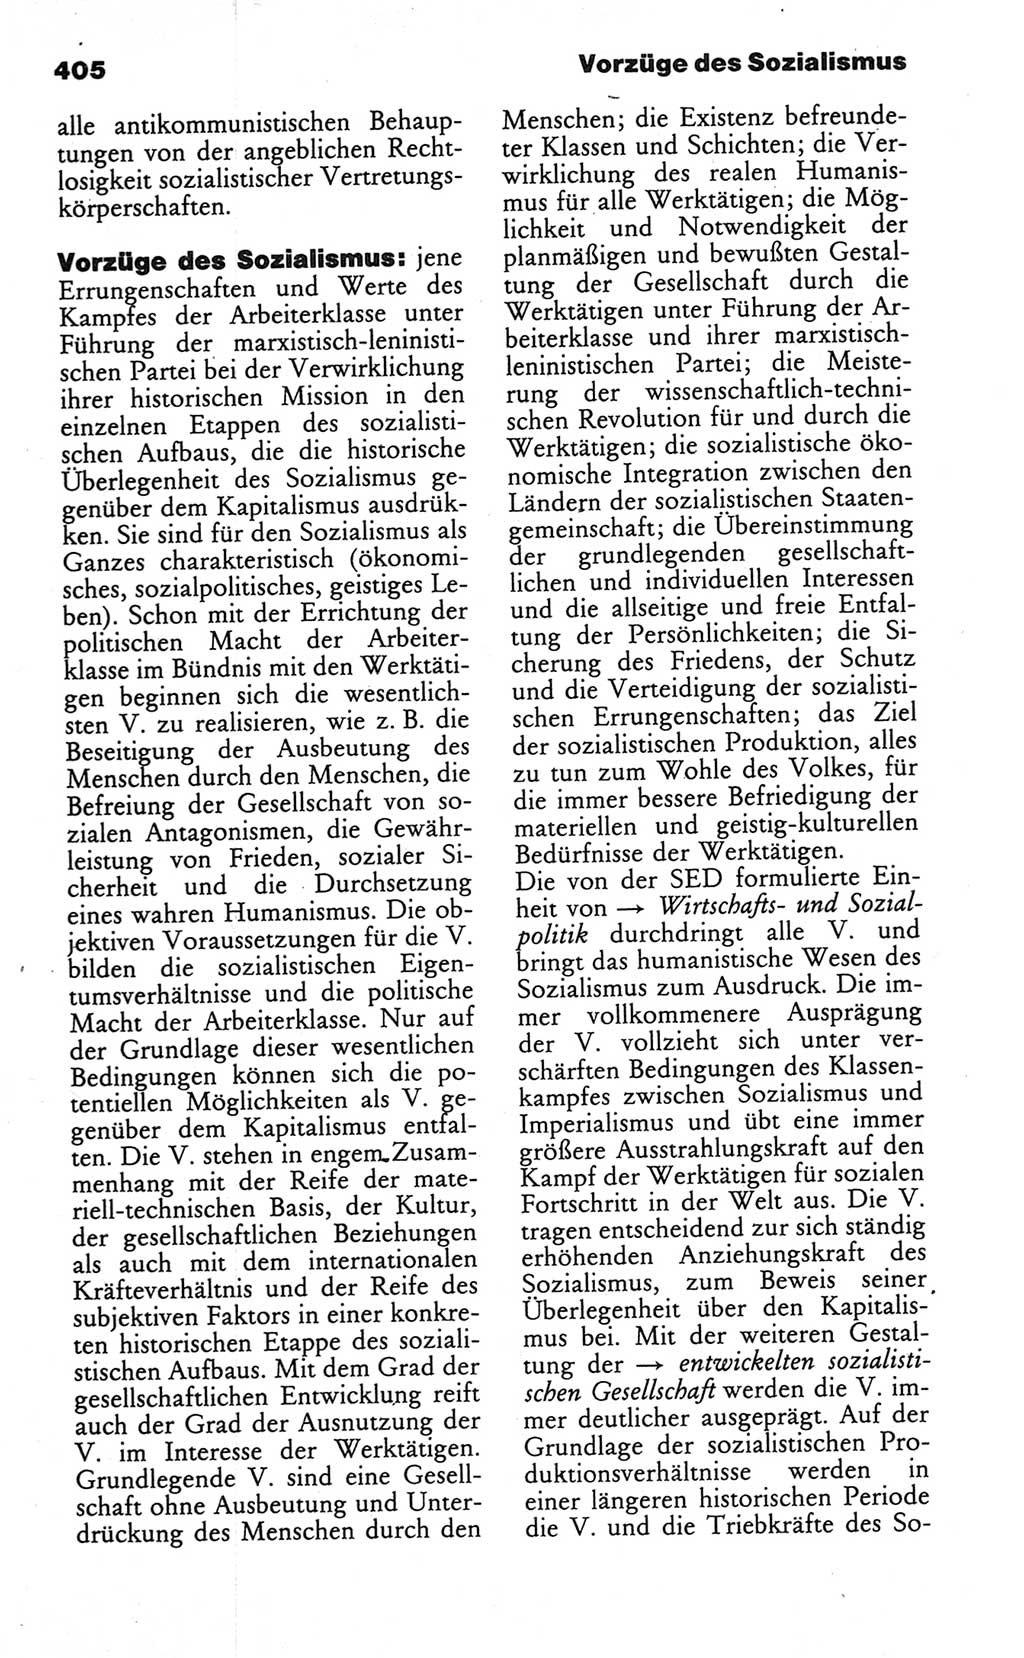 Wörterbuch des wissenschaftlichen Kommunismus [Deutsche Demokratische Republik (DDR)] 1984, Seite 405 (Wb. wiss. Komm. DDR 1984, S. 405)